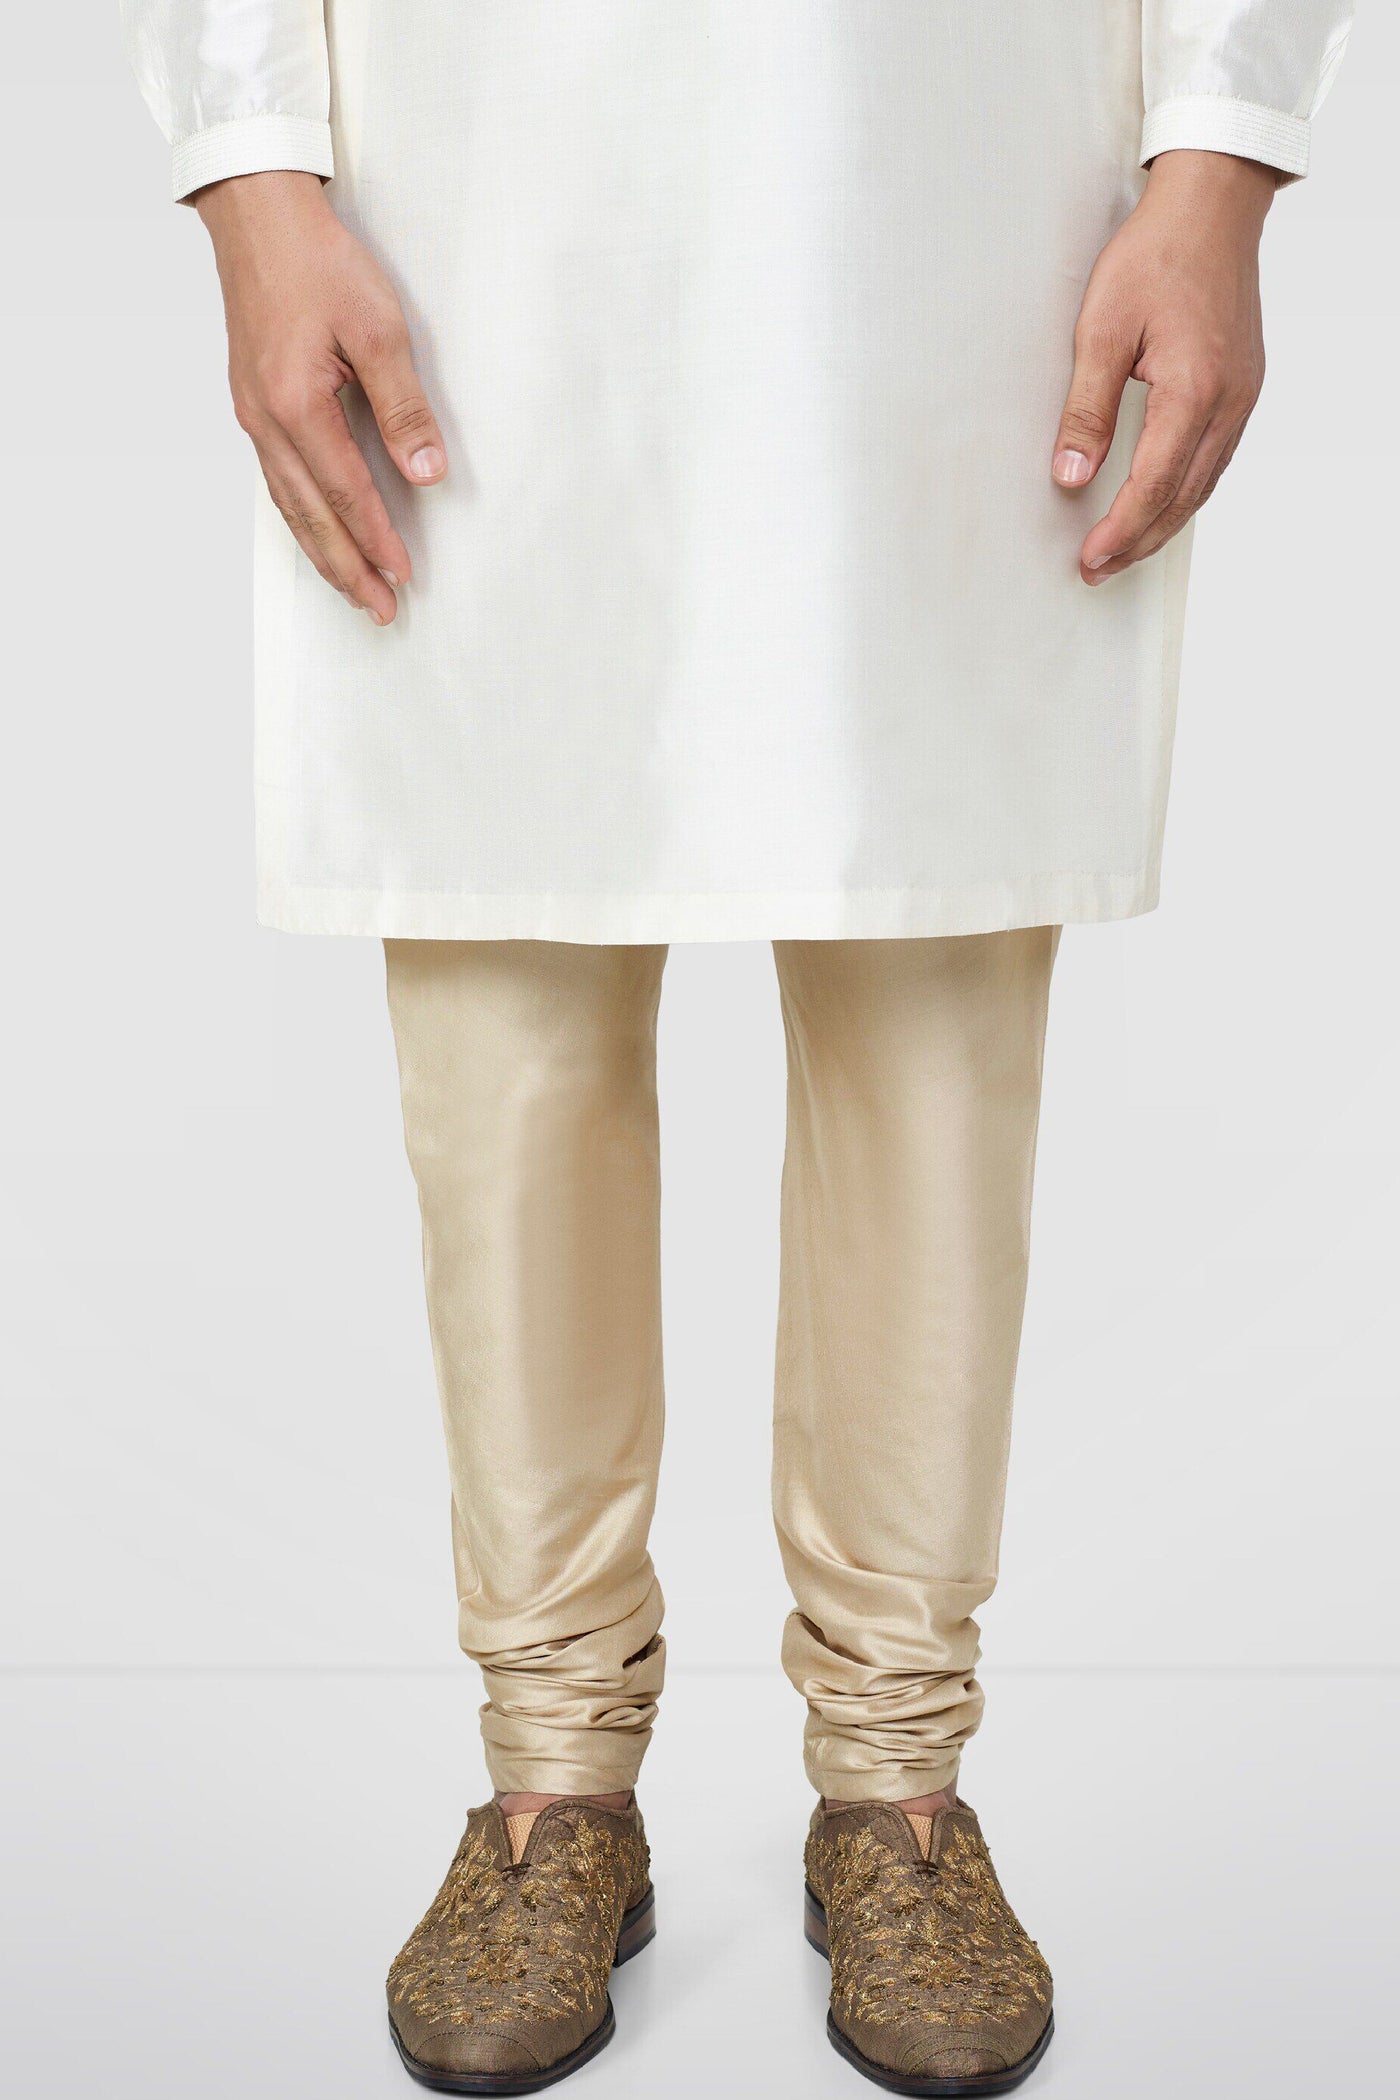 Anita Dongre Gold Silk Churidar Indian designer wear online shopping melange singapore